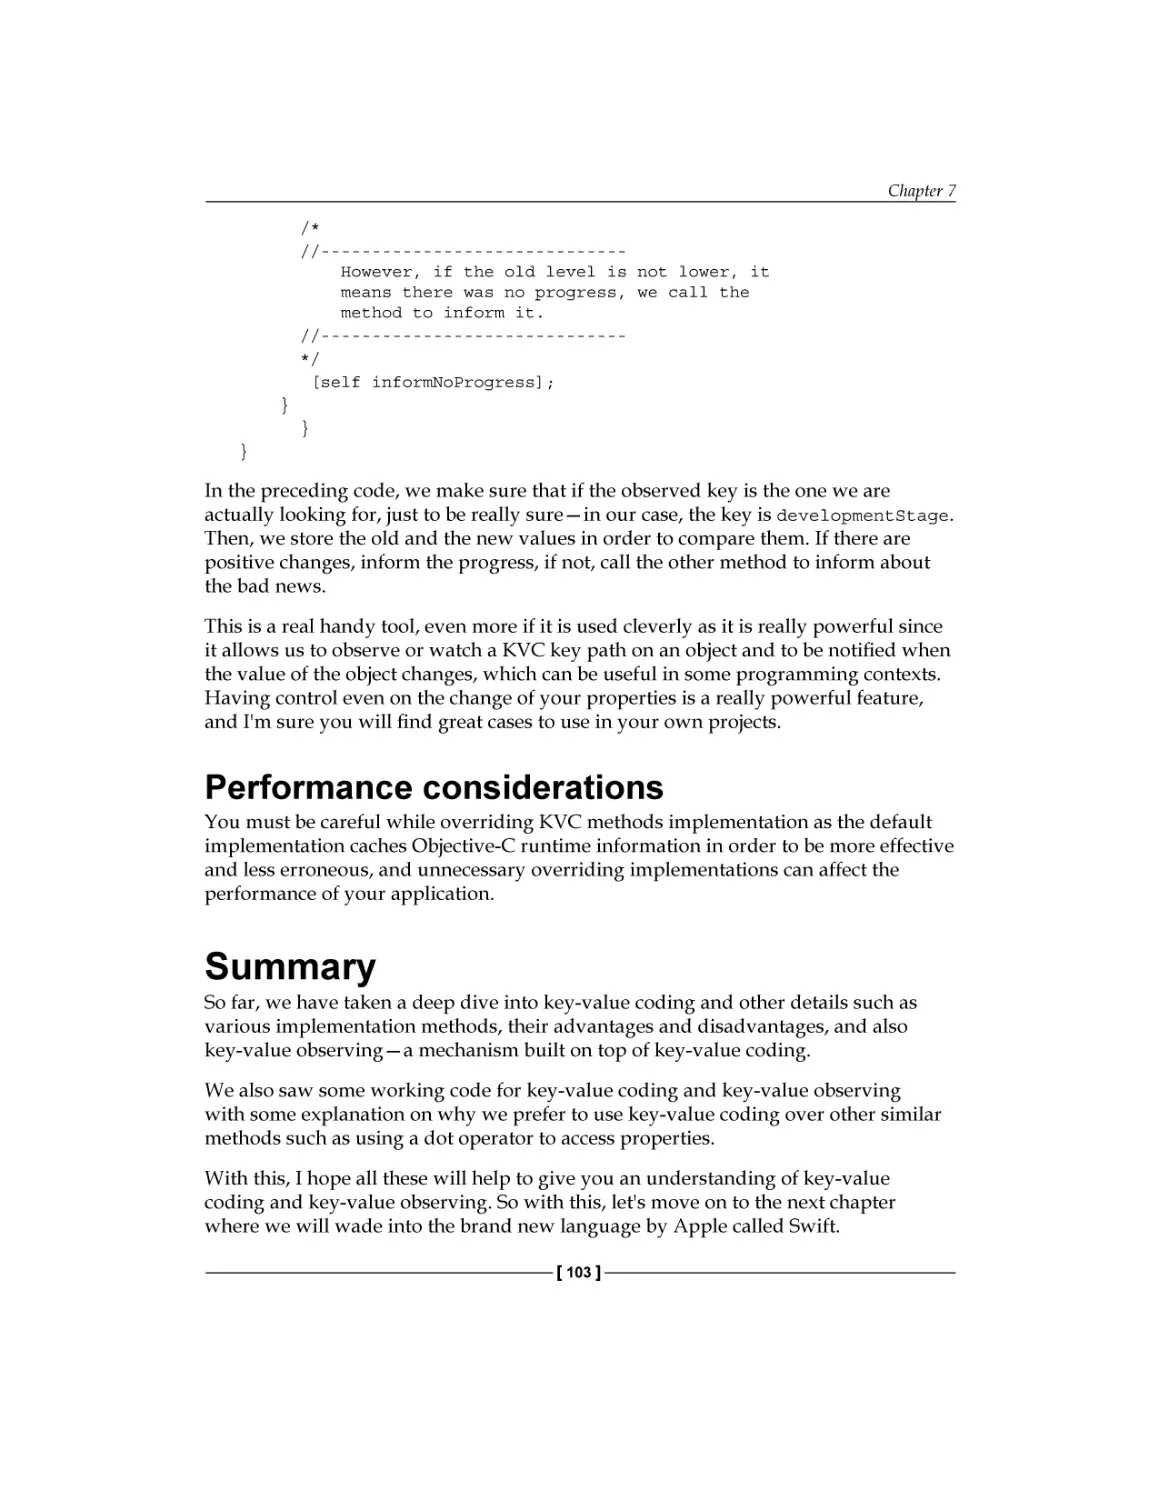 Performance considerations
Summary